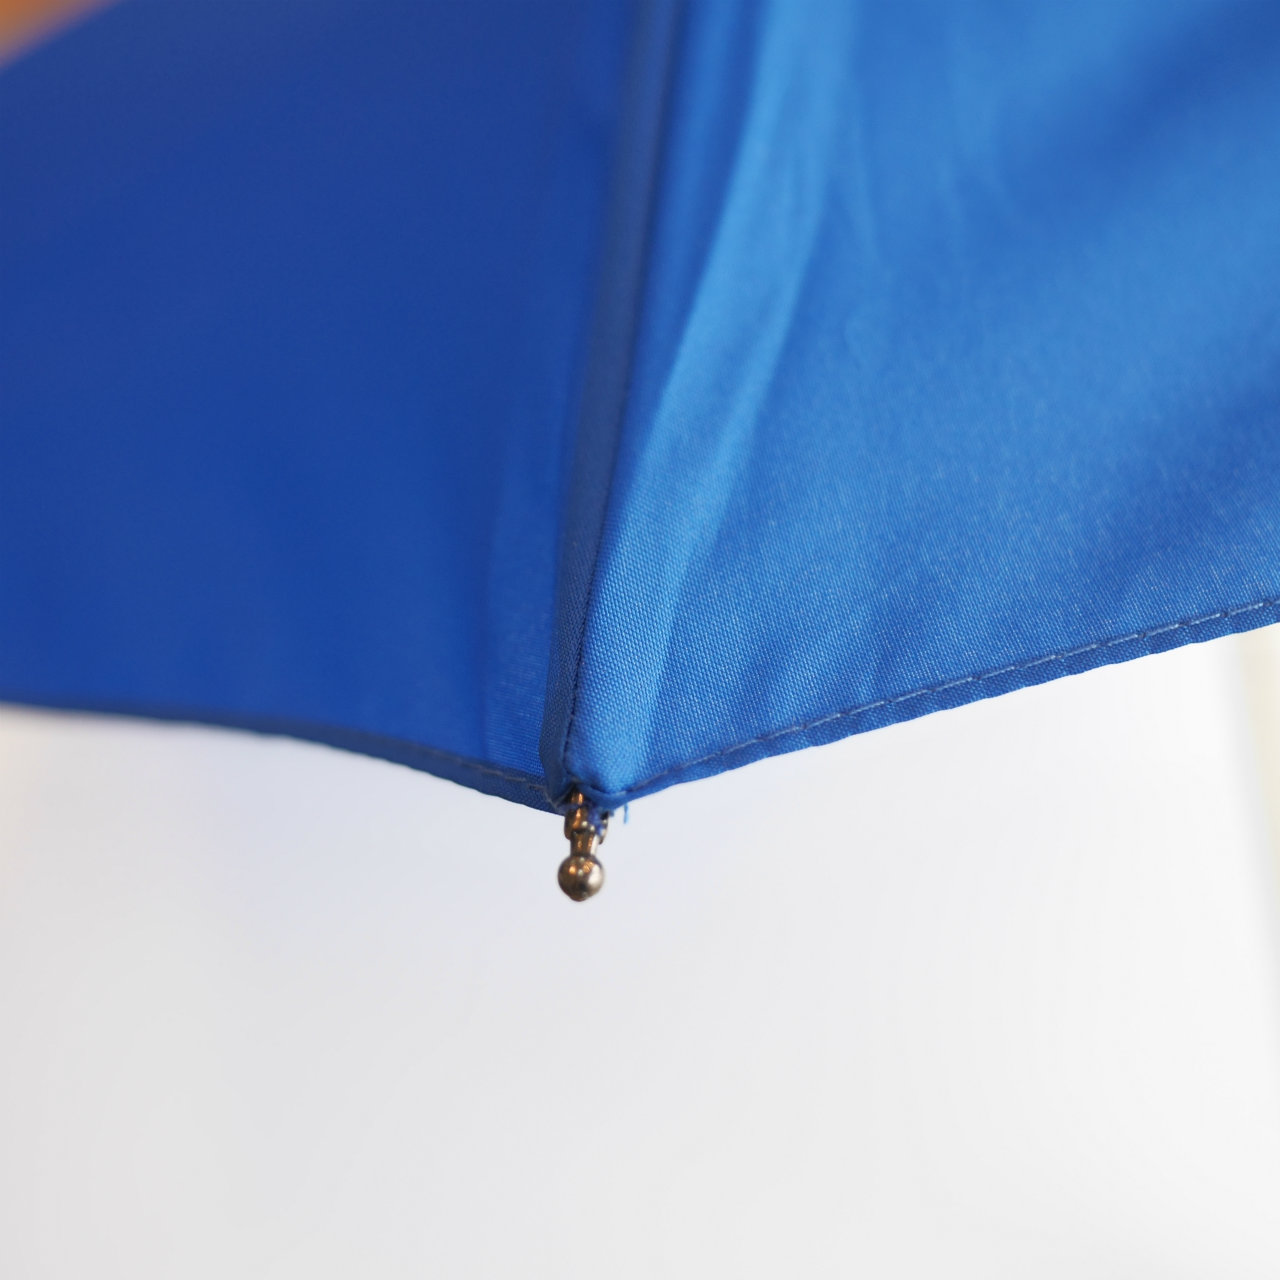 Anatole Paris folding micro-umbrella ブルー